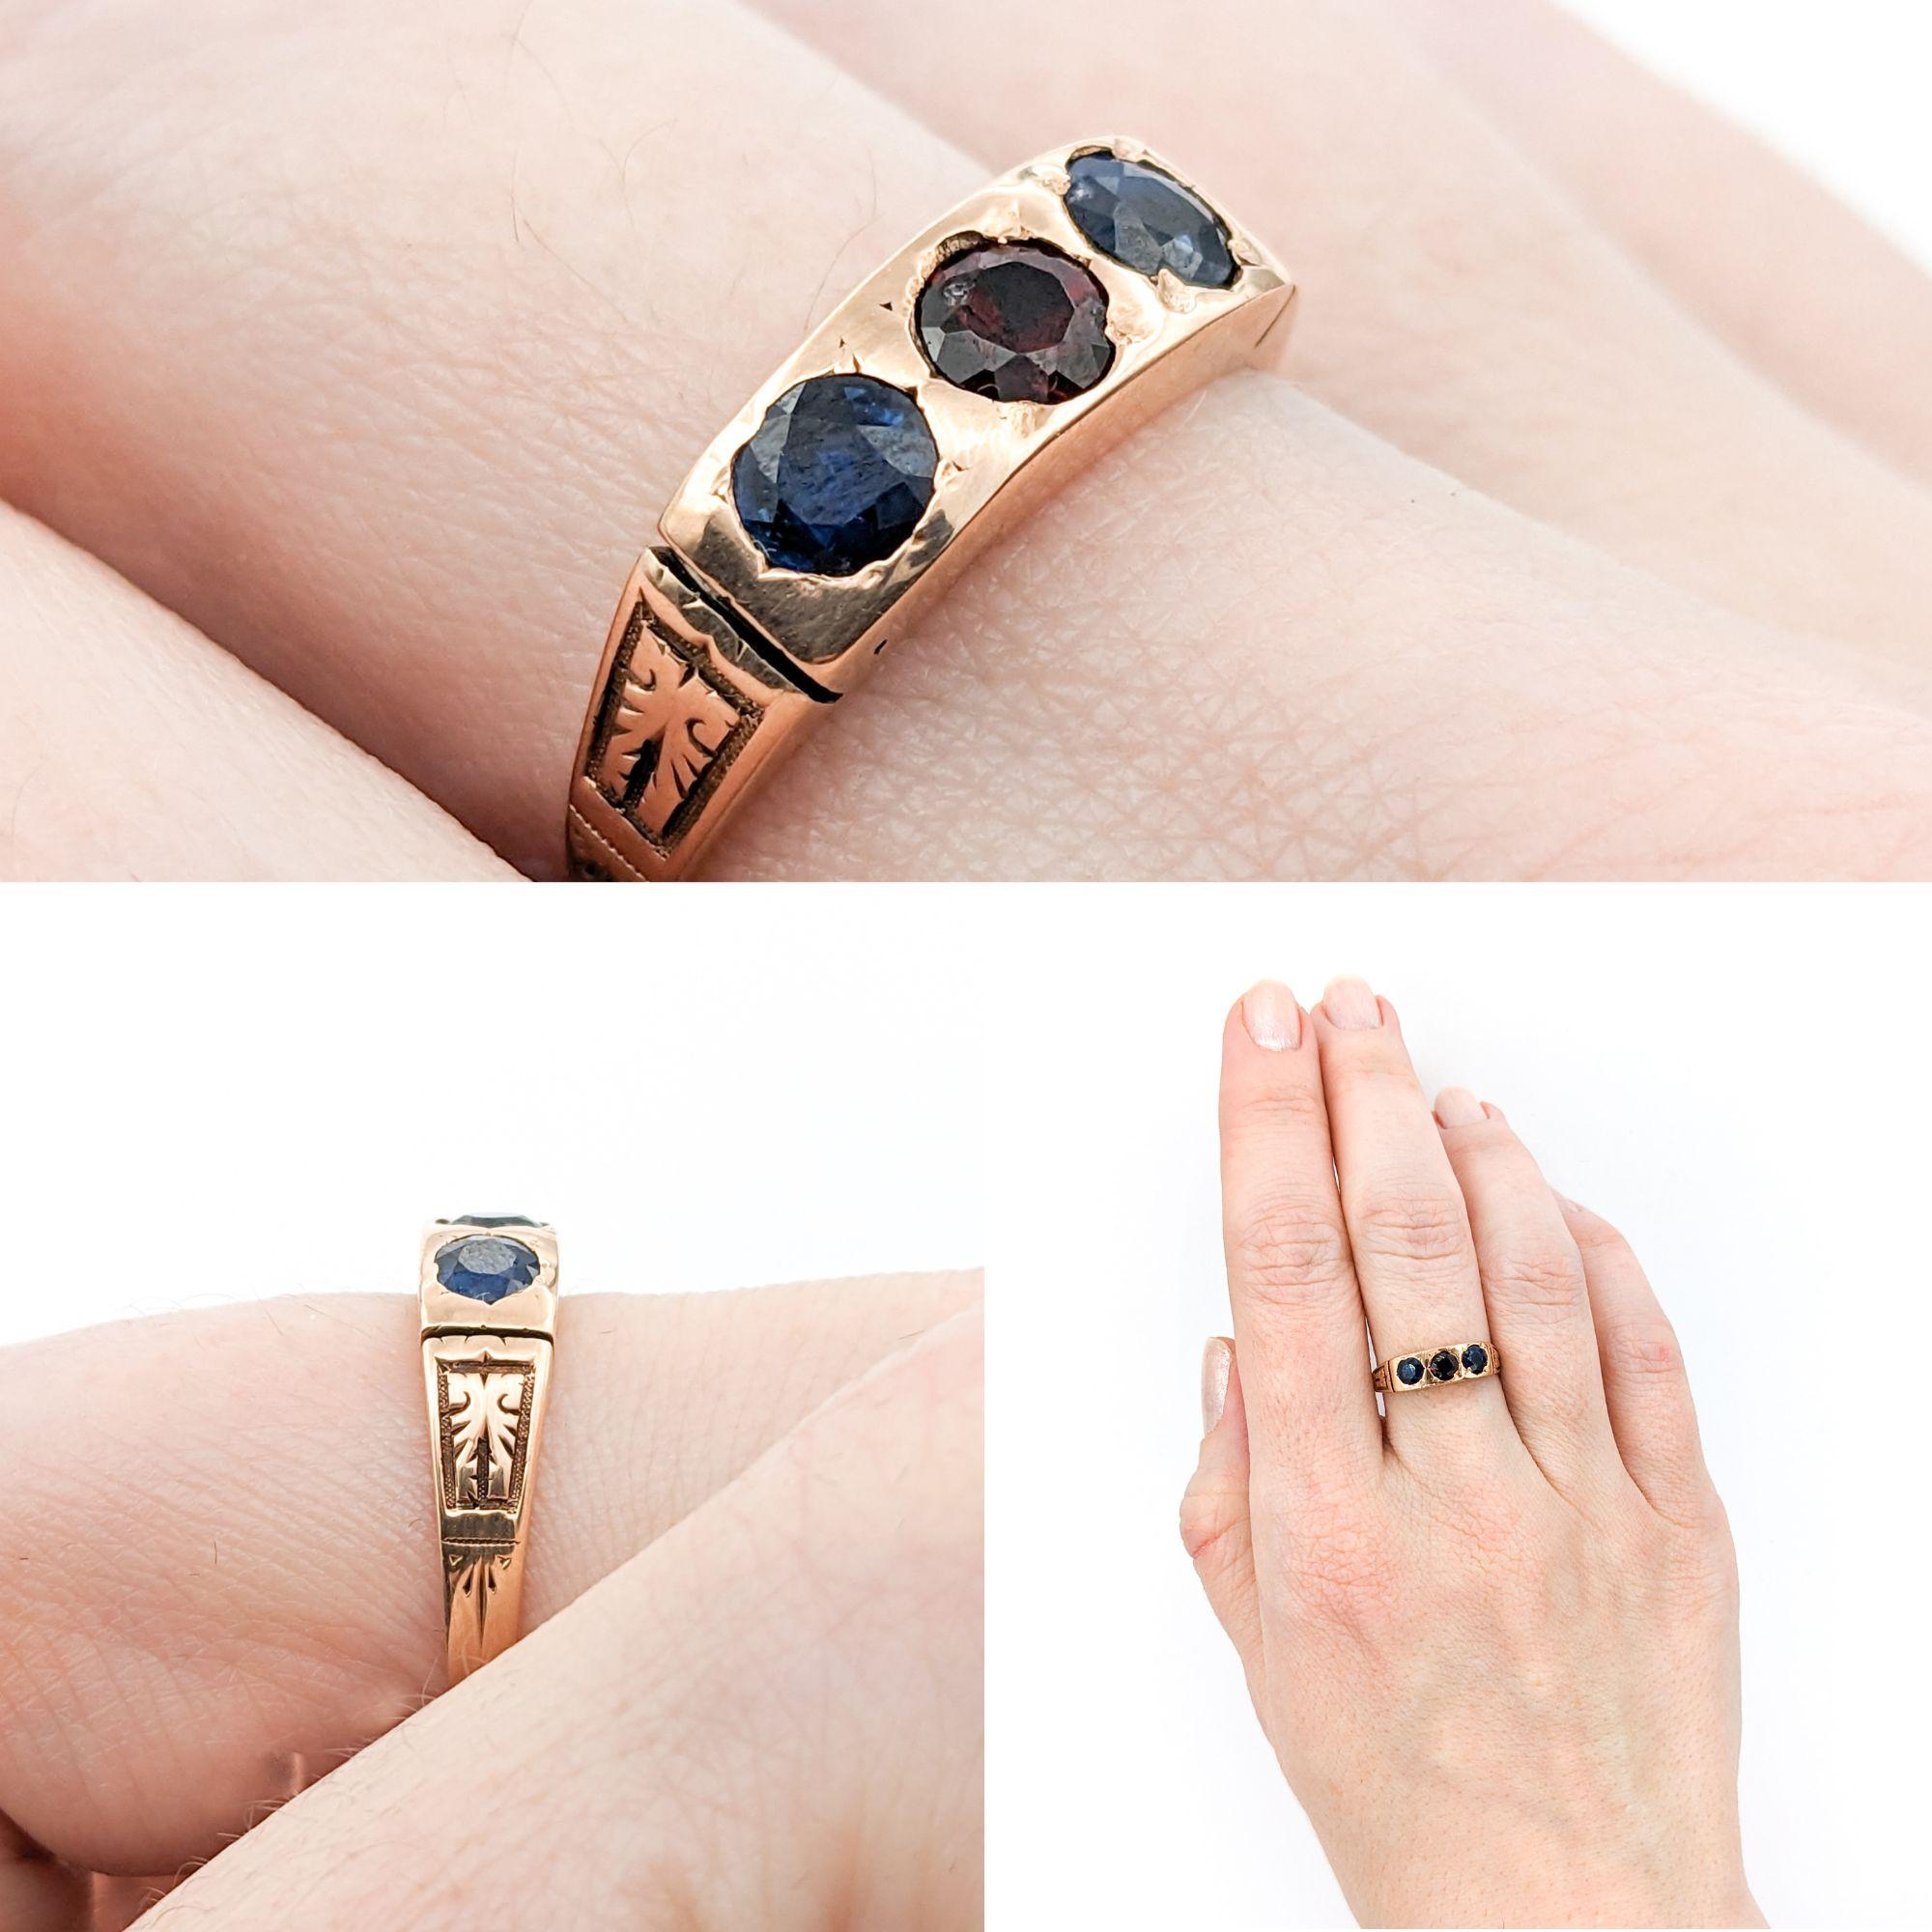 Antiker Saphir & Granat Ring in Gelbgold

Erleben Sie den Charme viktorianischer Eleganz mit diesem exquisiten antiken Ring, der sorgfältig aus 9k Gelbgold gefertigt wurde. Dieser Ring ist ein Schatz aus der Vergangenheit und verkörpert die